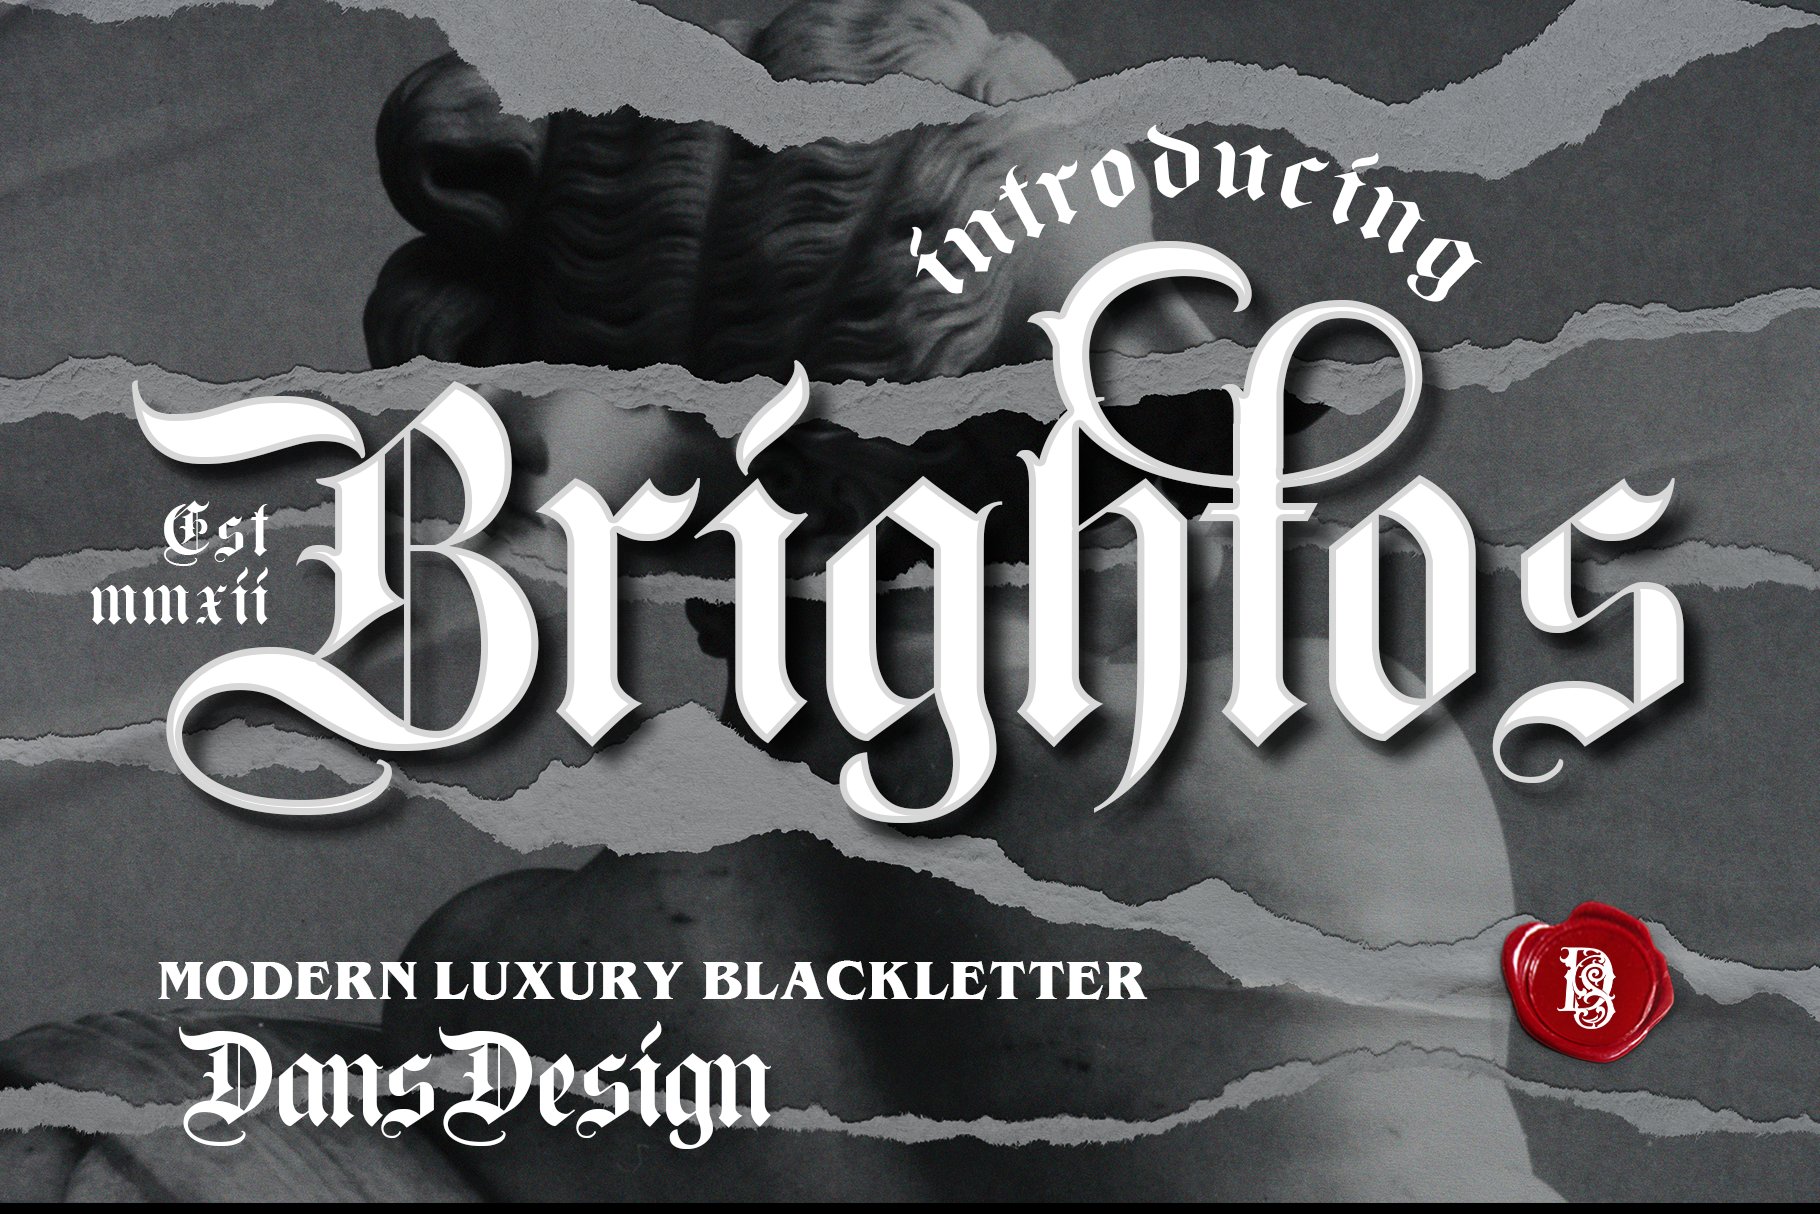 Brightos Blackletter font cover image.